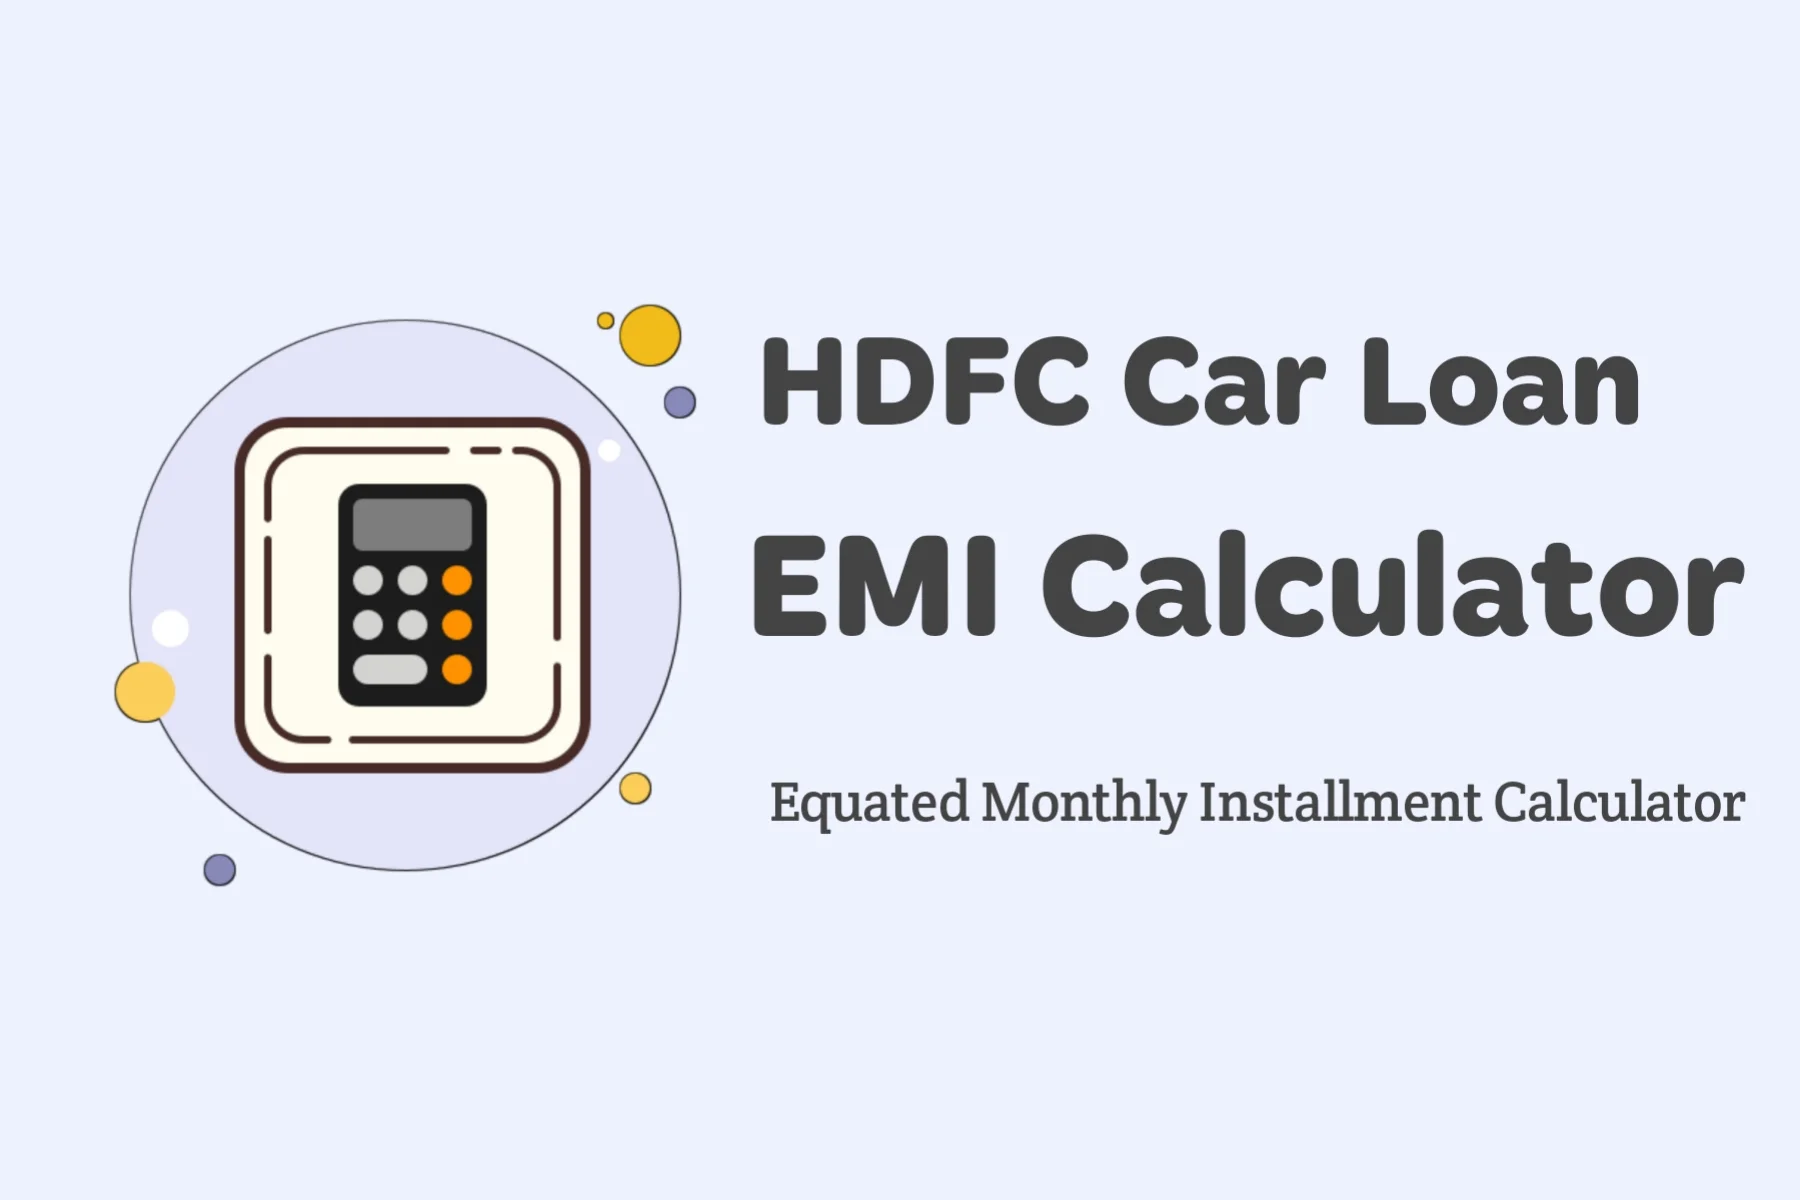 HDFC Bank Car Loan EMI Calculator